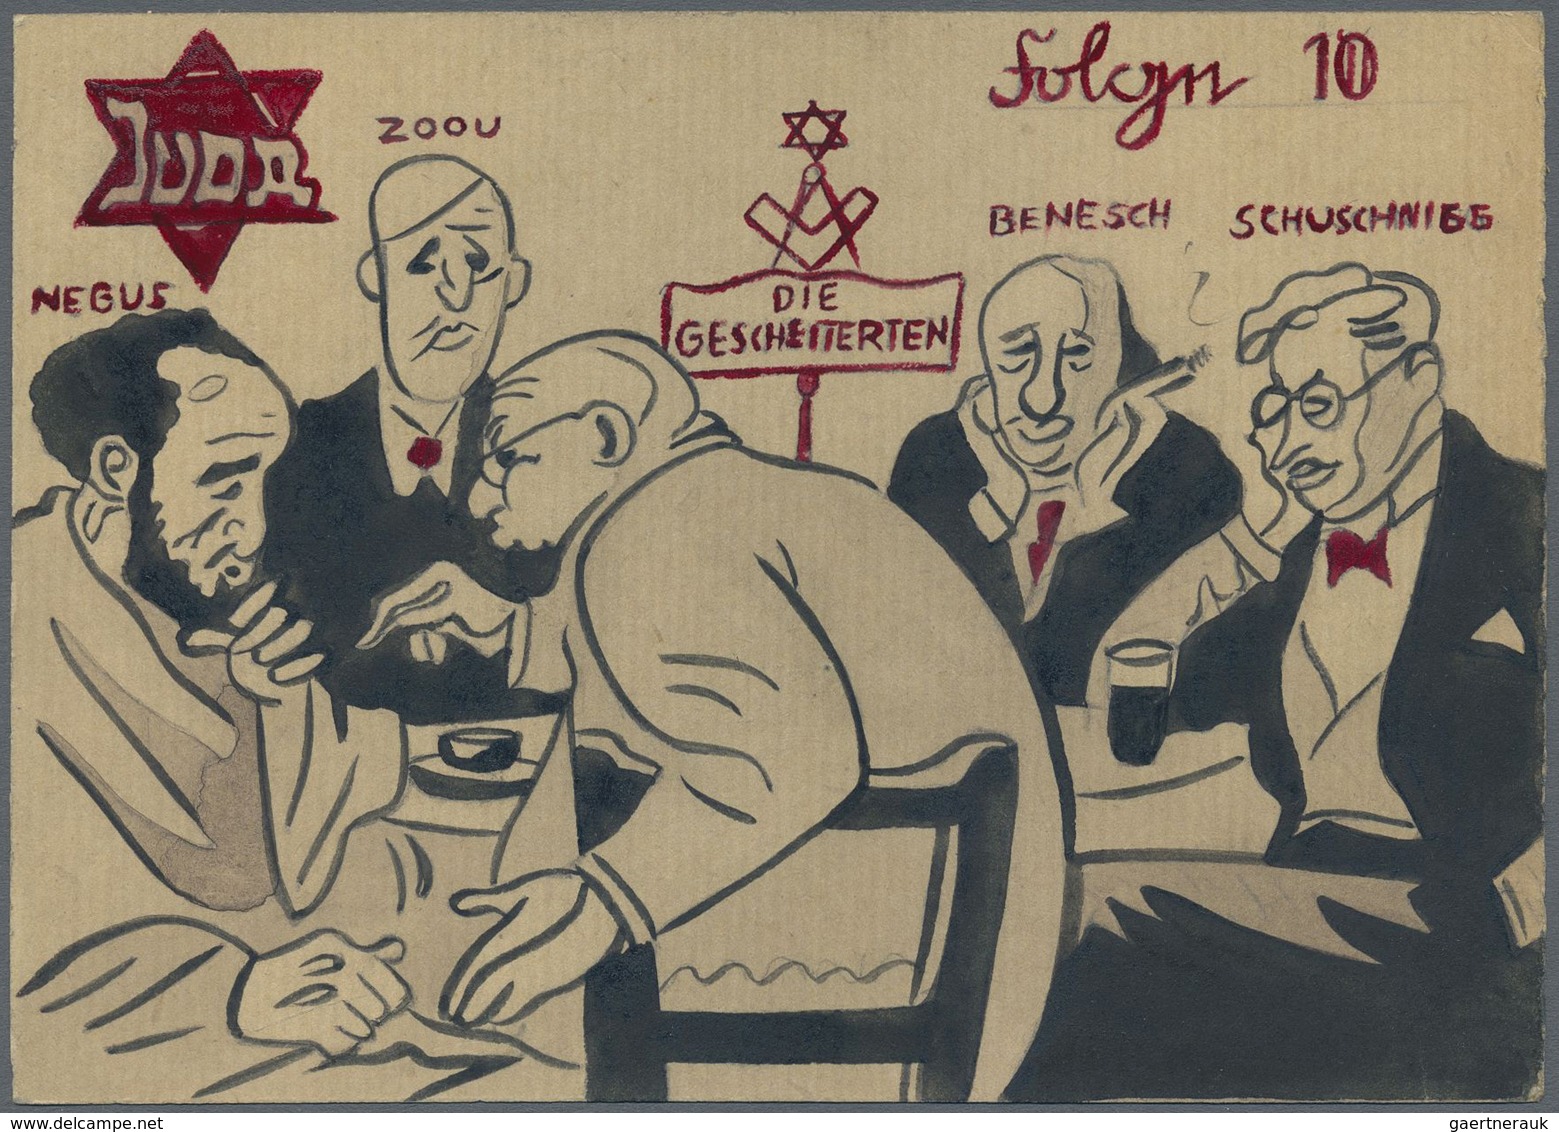 Ansichtskarten: Propaganda: Antisemitismus - "JUDA - Fehlgeschlagene Dekrete", "Folge 10", Zutiefst - Partiti Politici & Elezioni